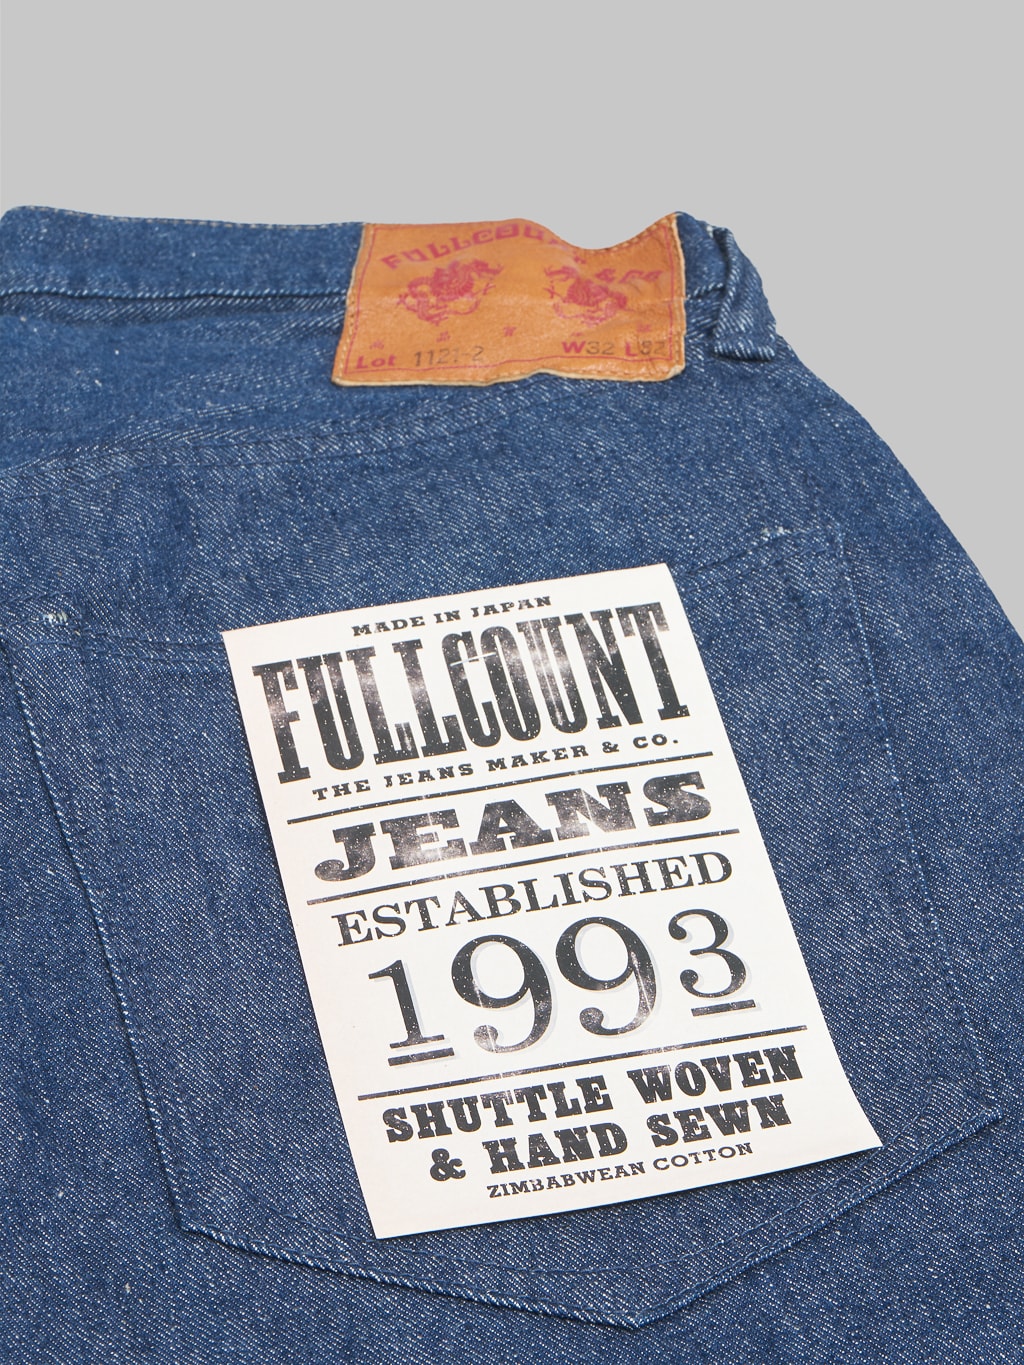 fullcount 1121 duke original selvedge denim super wide jeans pocket flasher